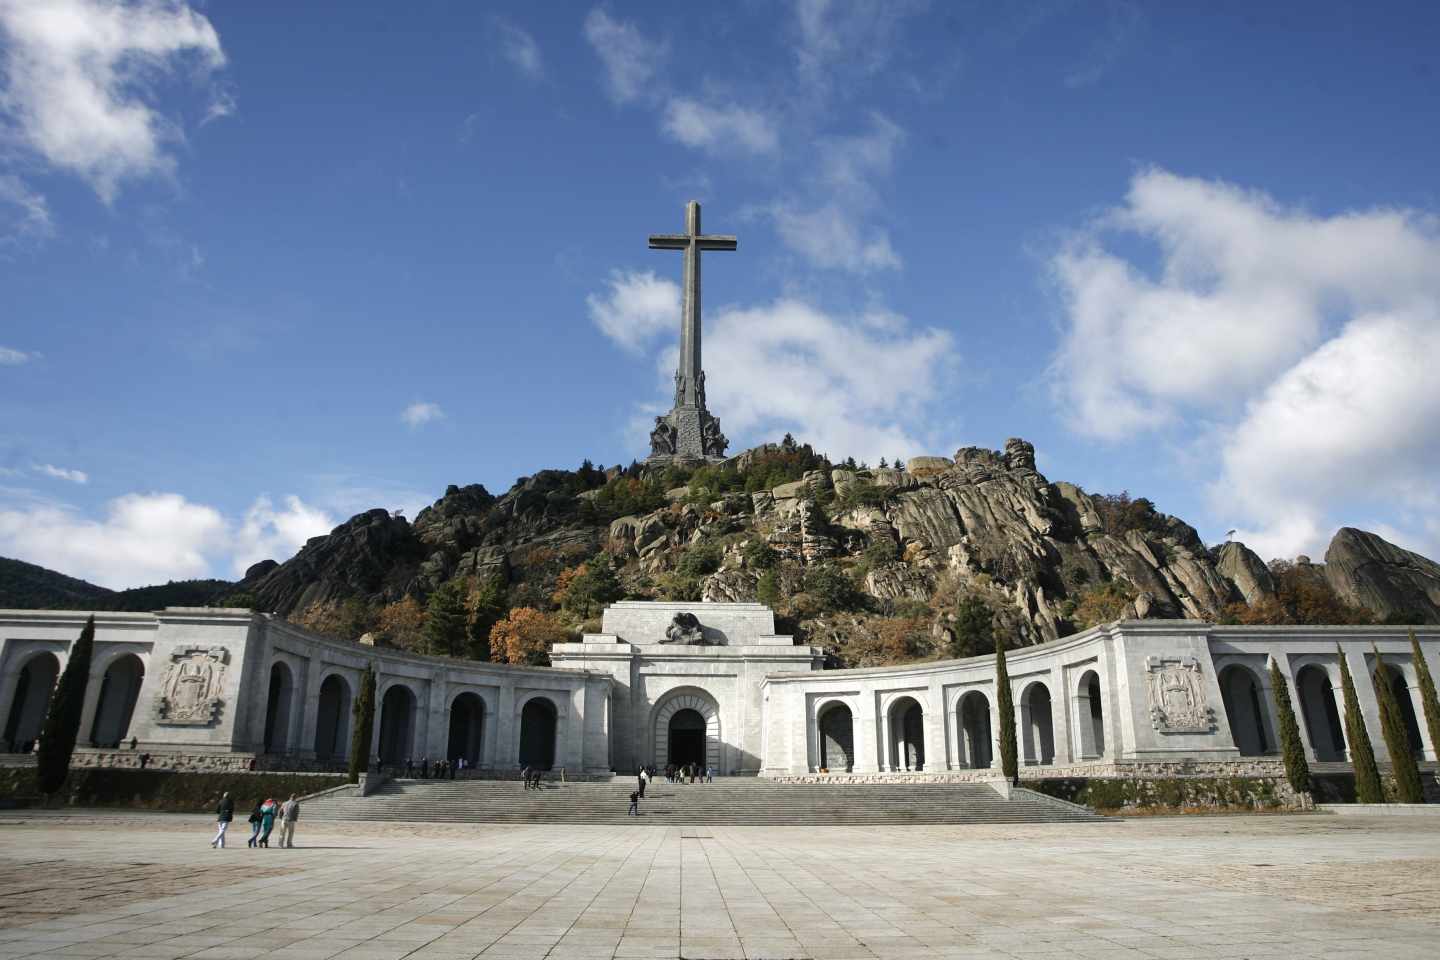 Vista fronta de la basílica del Valle de los Caídos, donde está enterrado Franco.